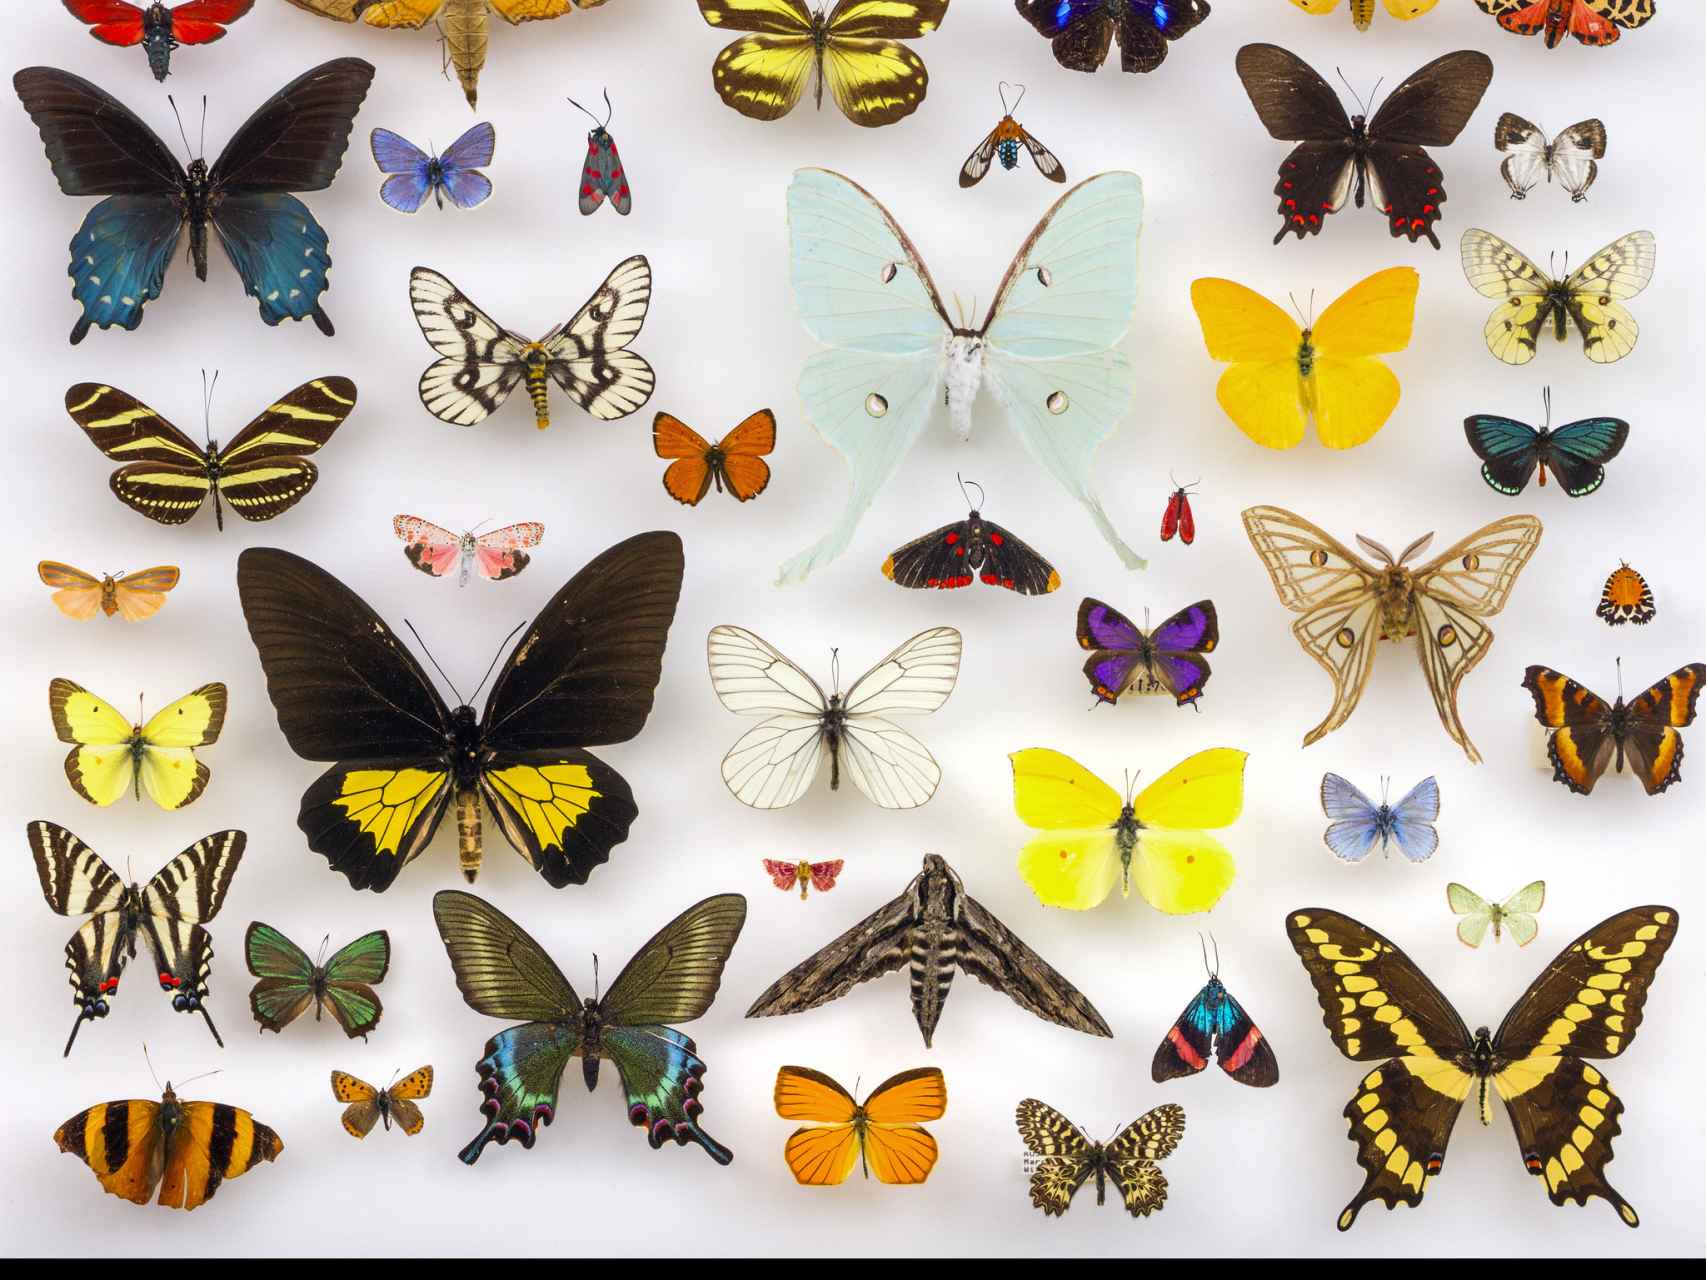 Mariposas de la colección de la Universidad de Texas.